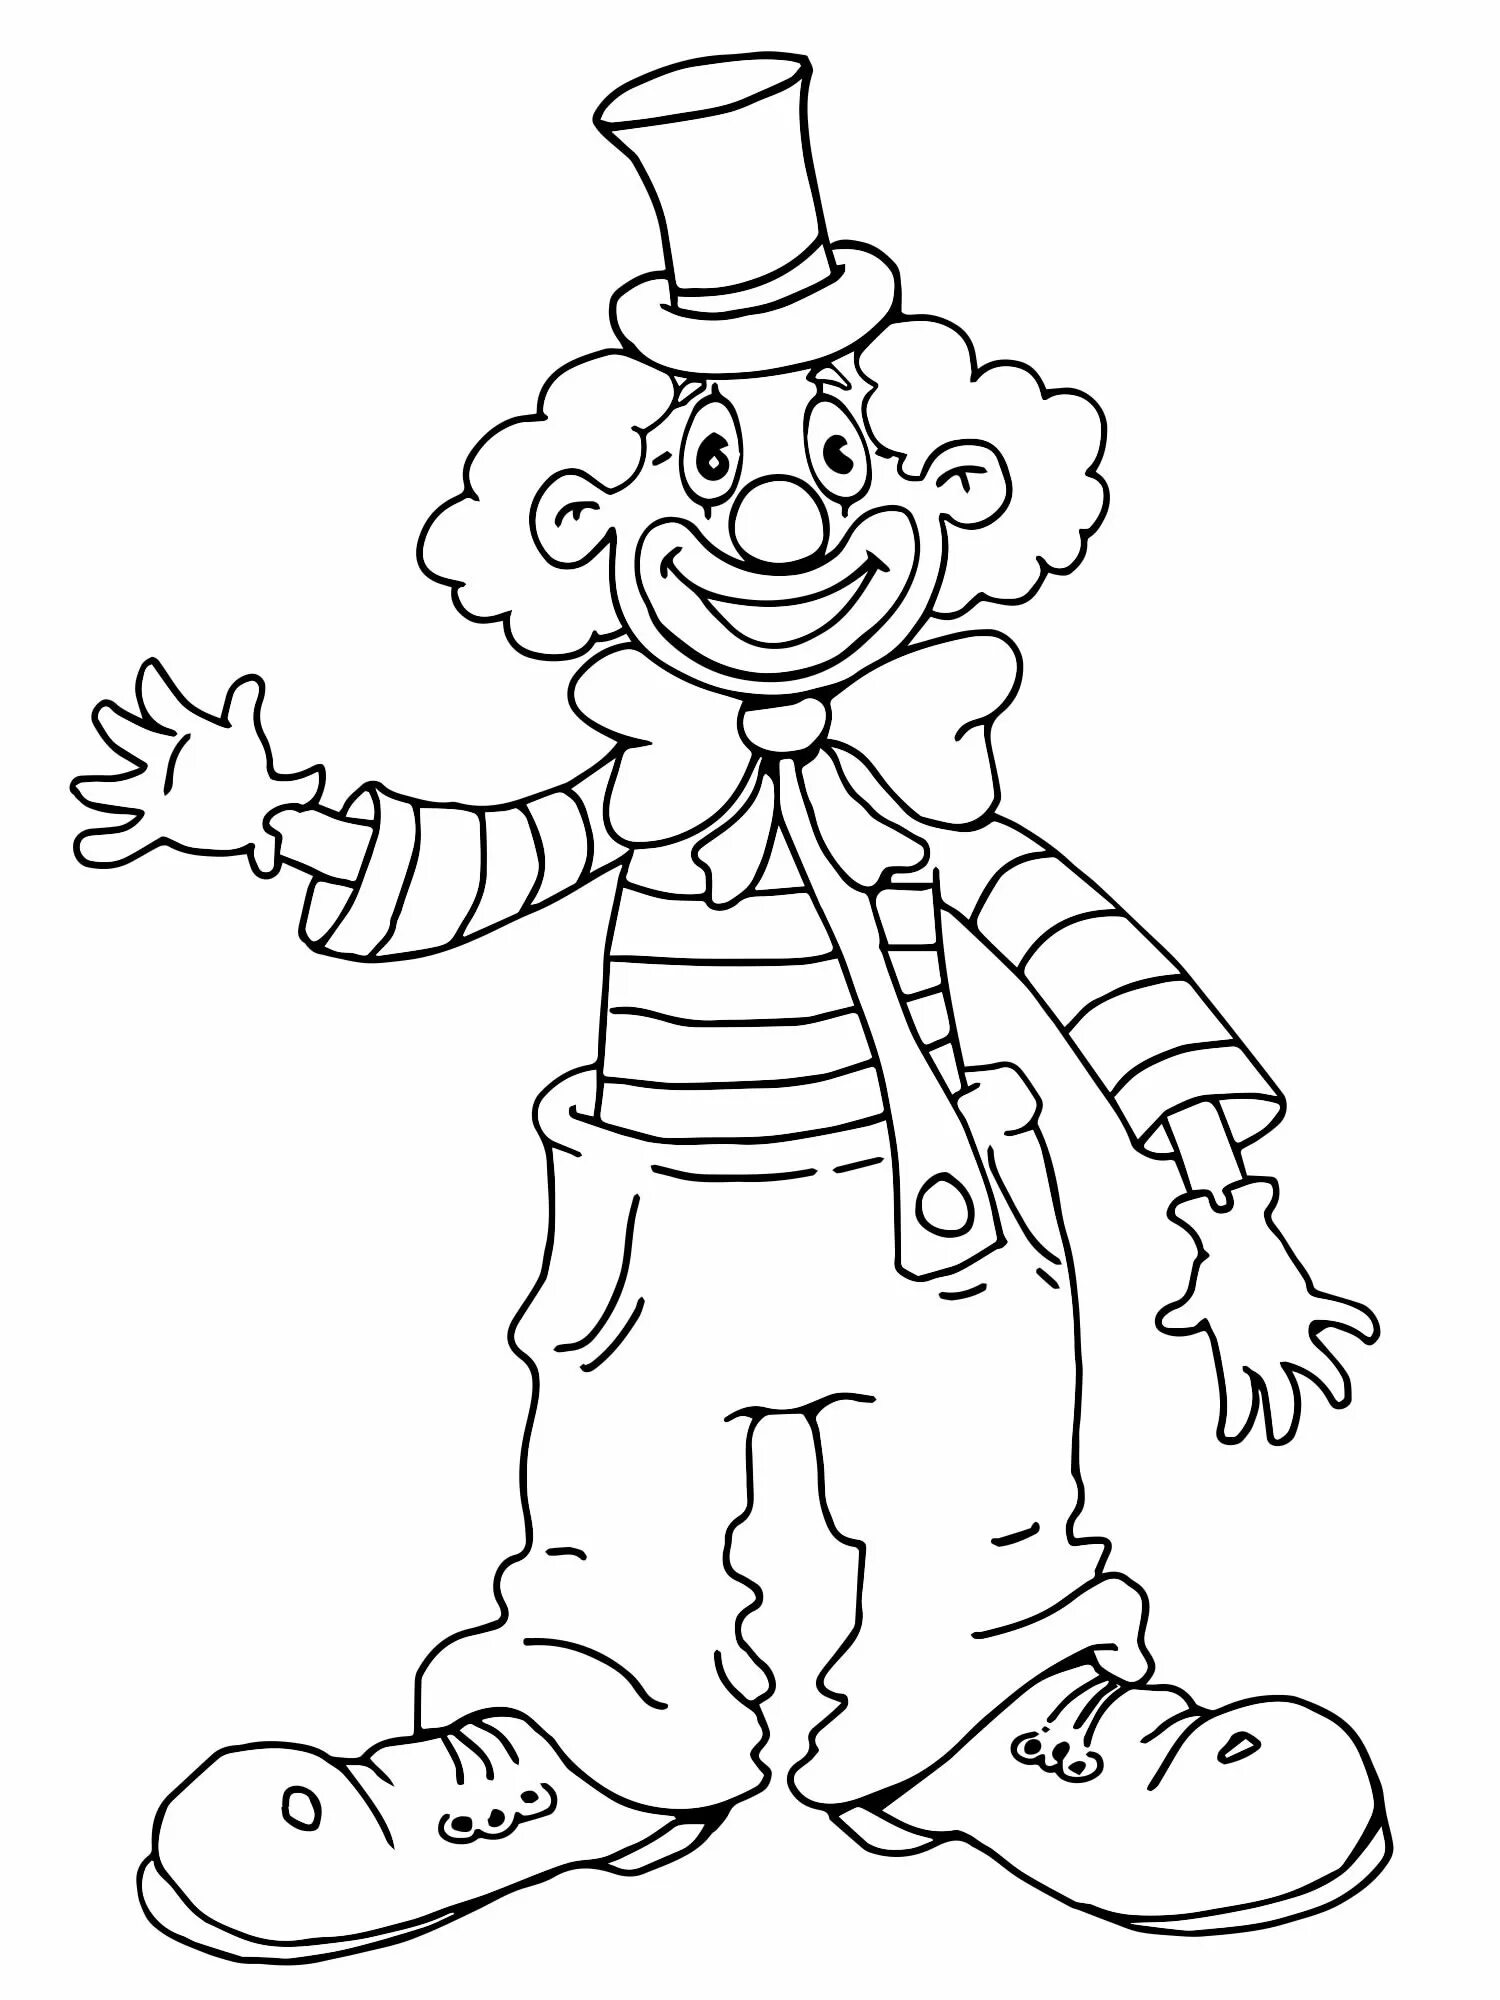 Клоун раскраска для детей 4 5 лет. Клоун раскраска. Клоун раскраска для детей. Клоун рисунок. Раскраска весёлый клоун для детей.